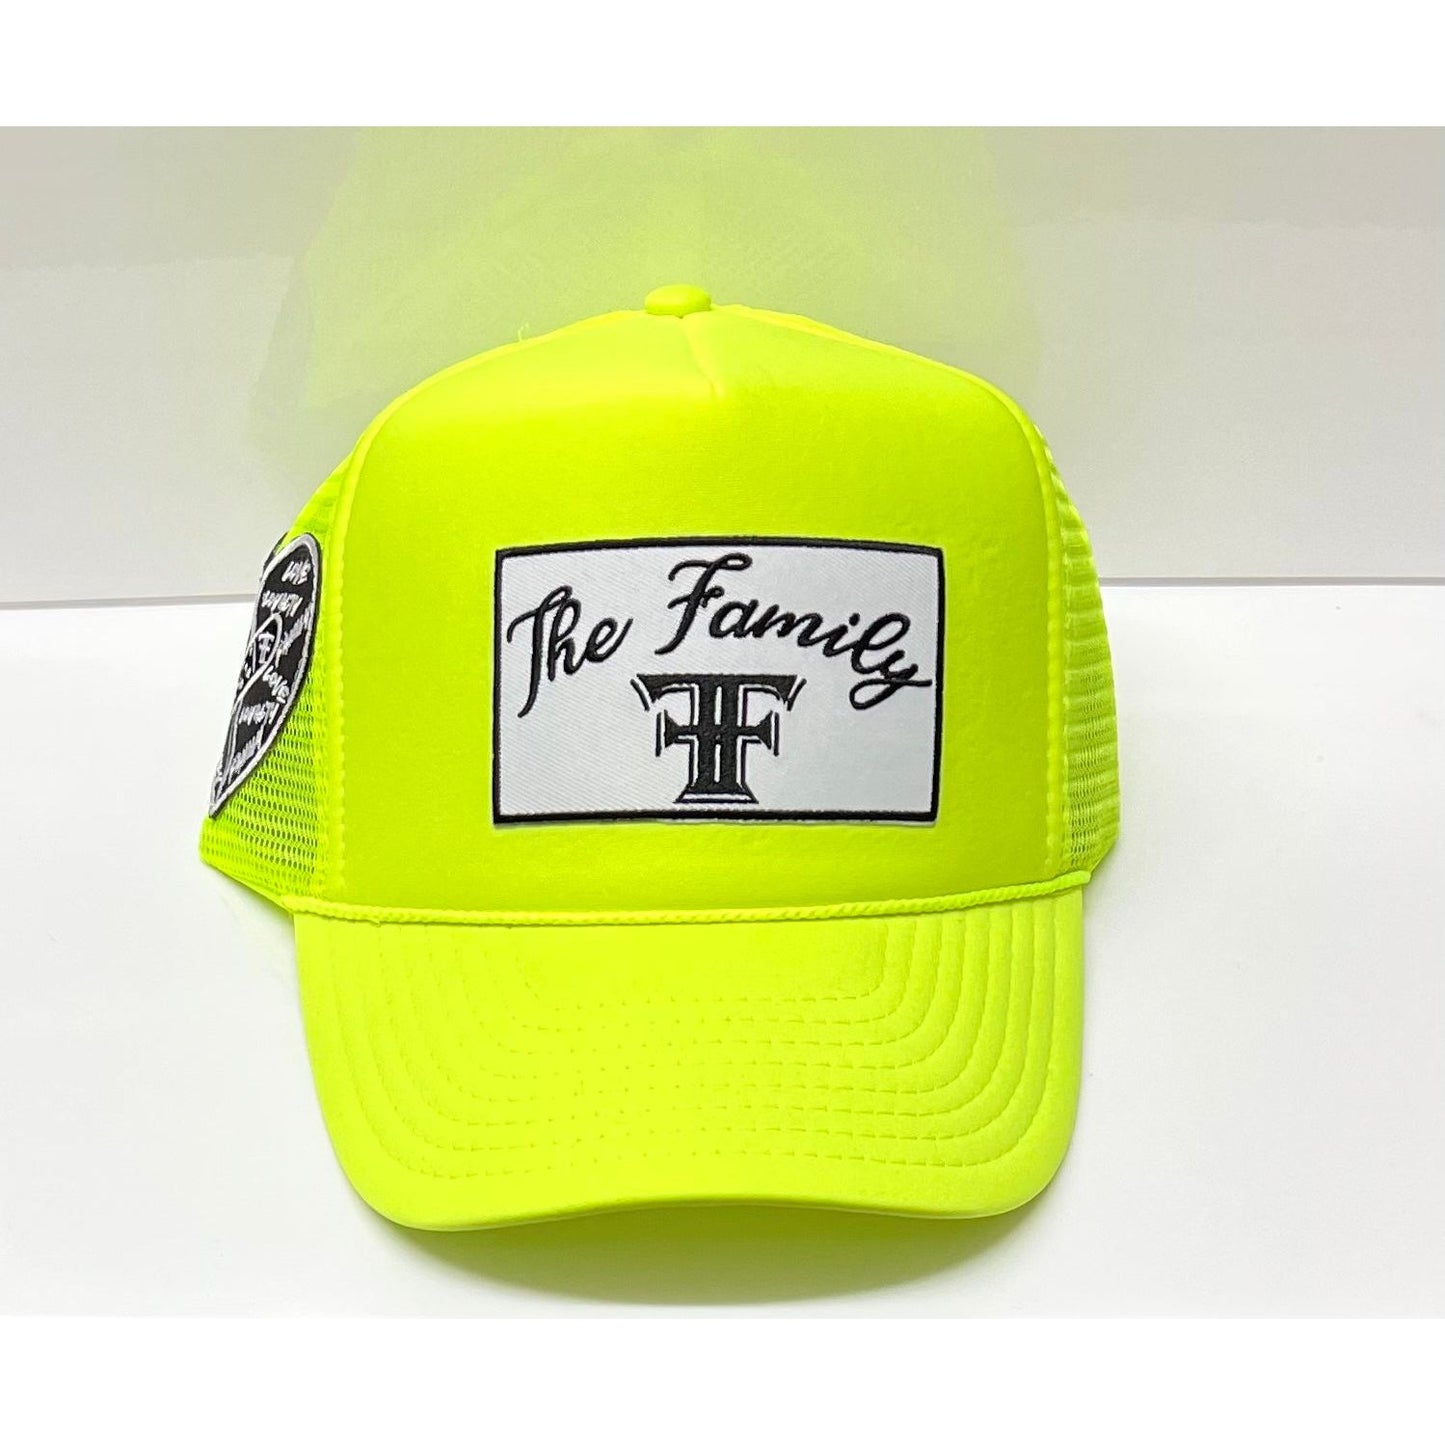 The Family trucker hat